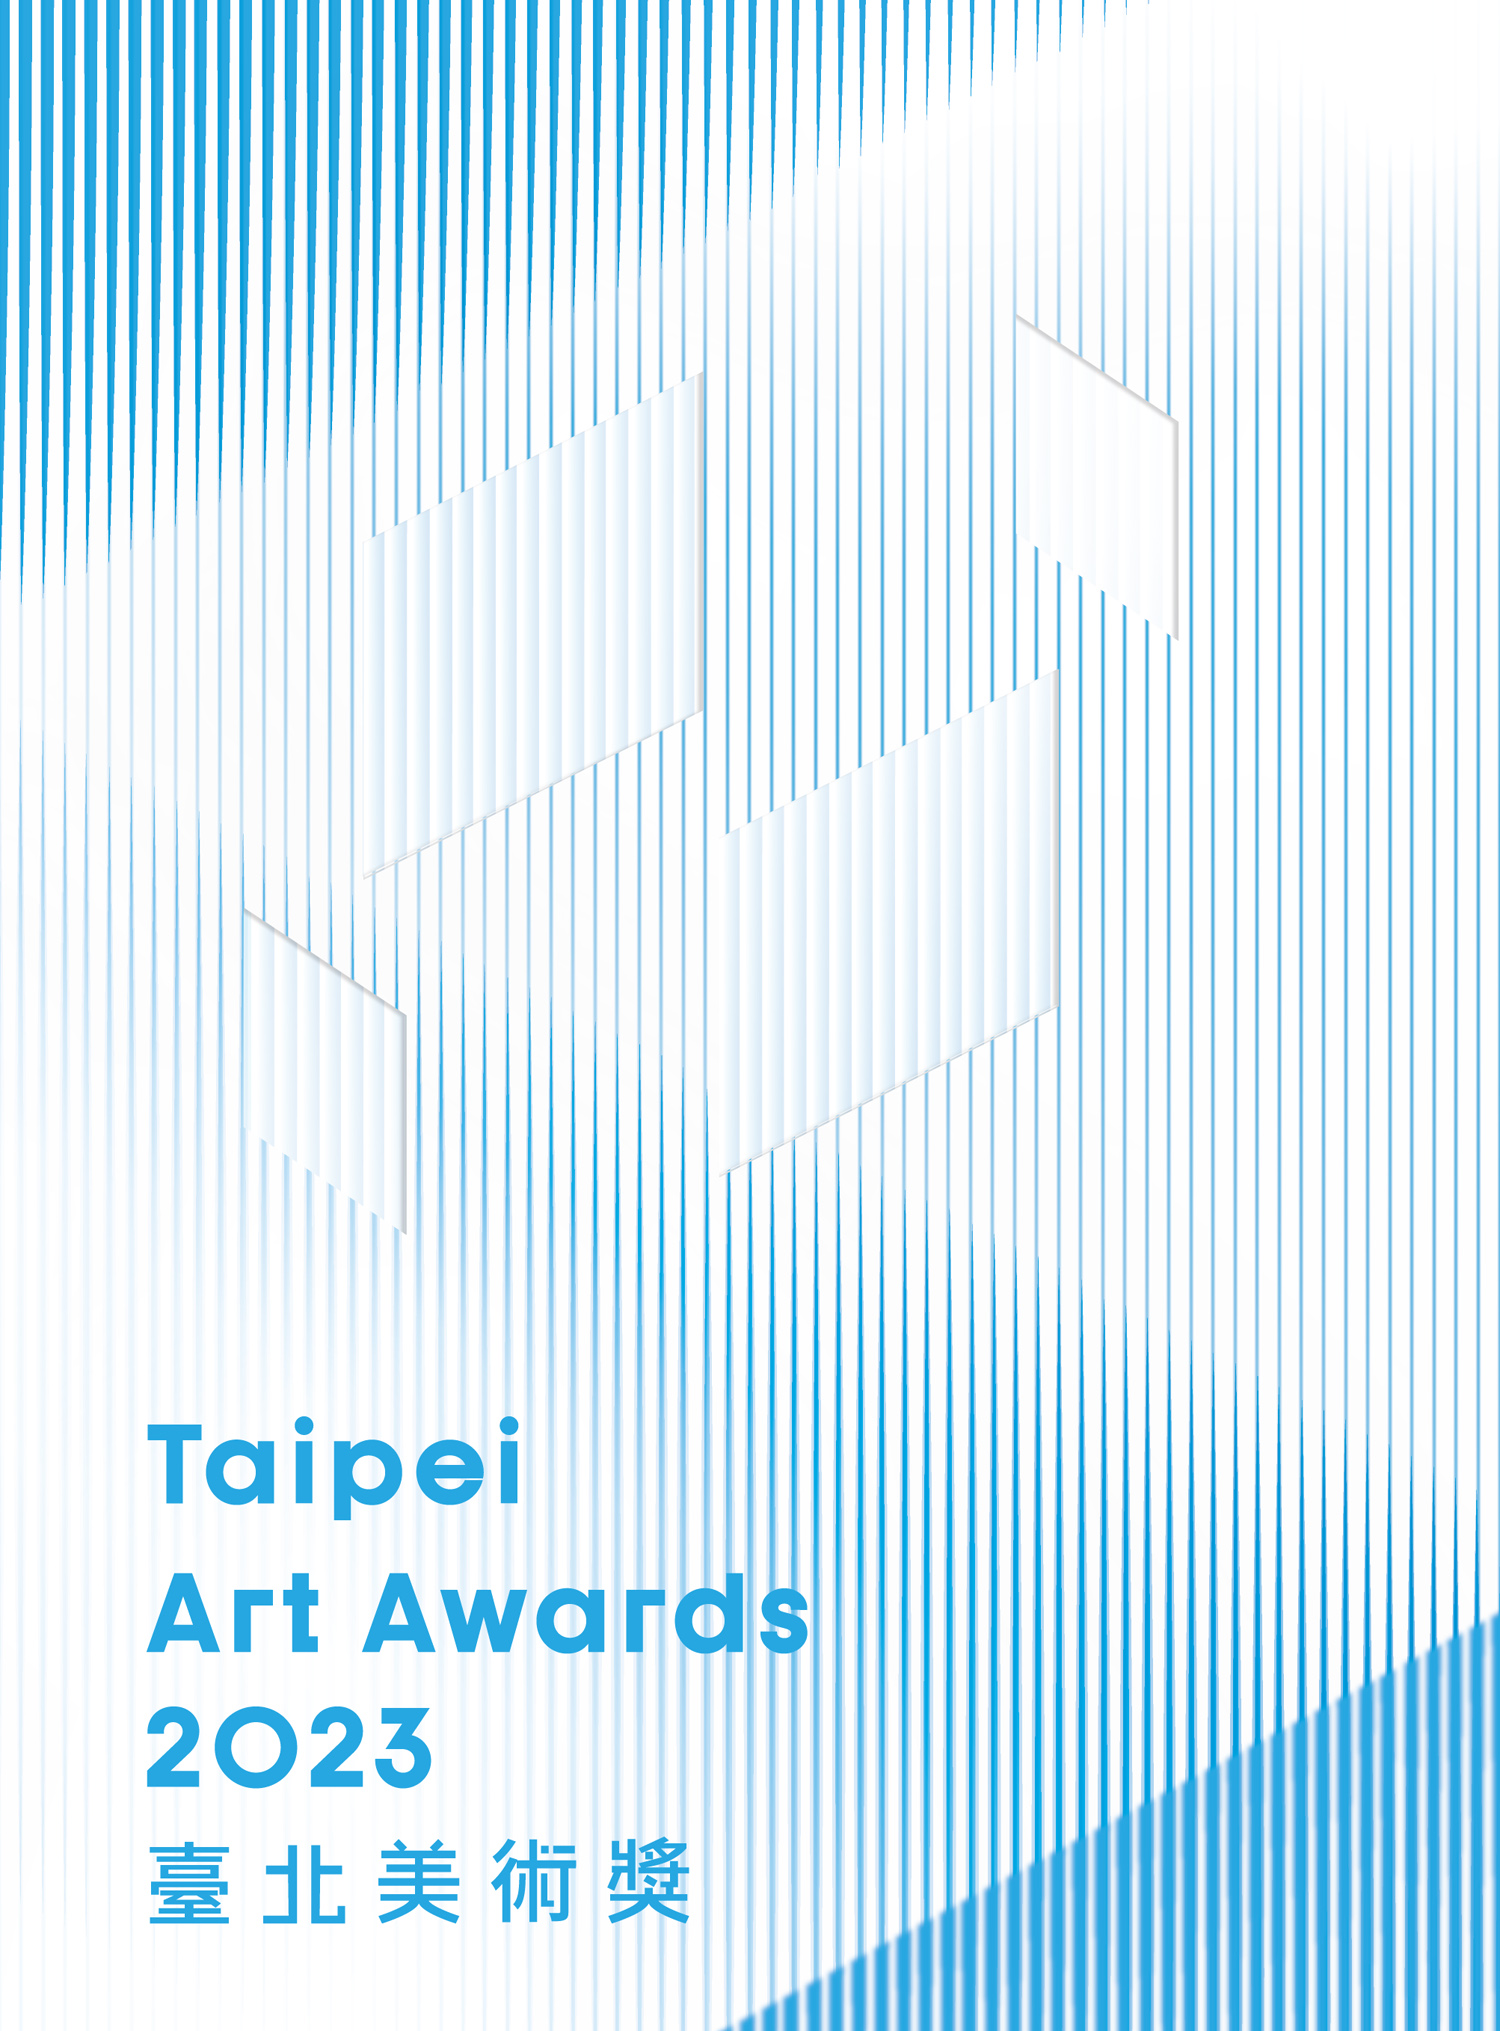 2023 Taipei Art Awards 的圖說